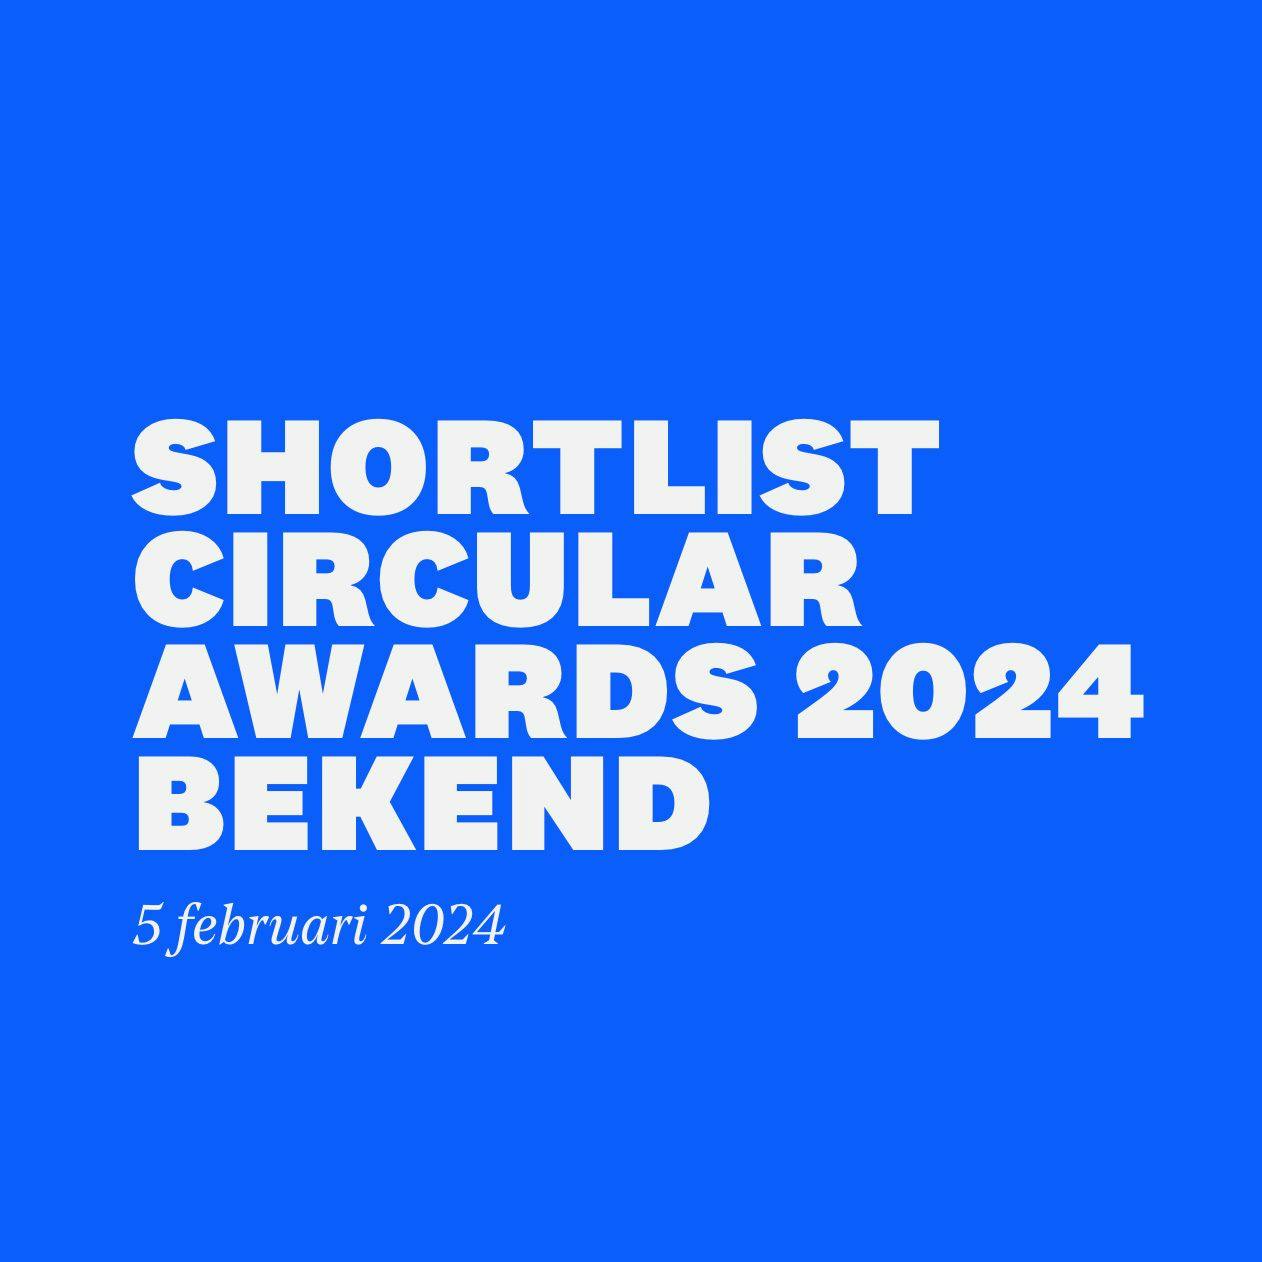 CircuLaw op shortlist voor de Circular Awards!image